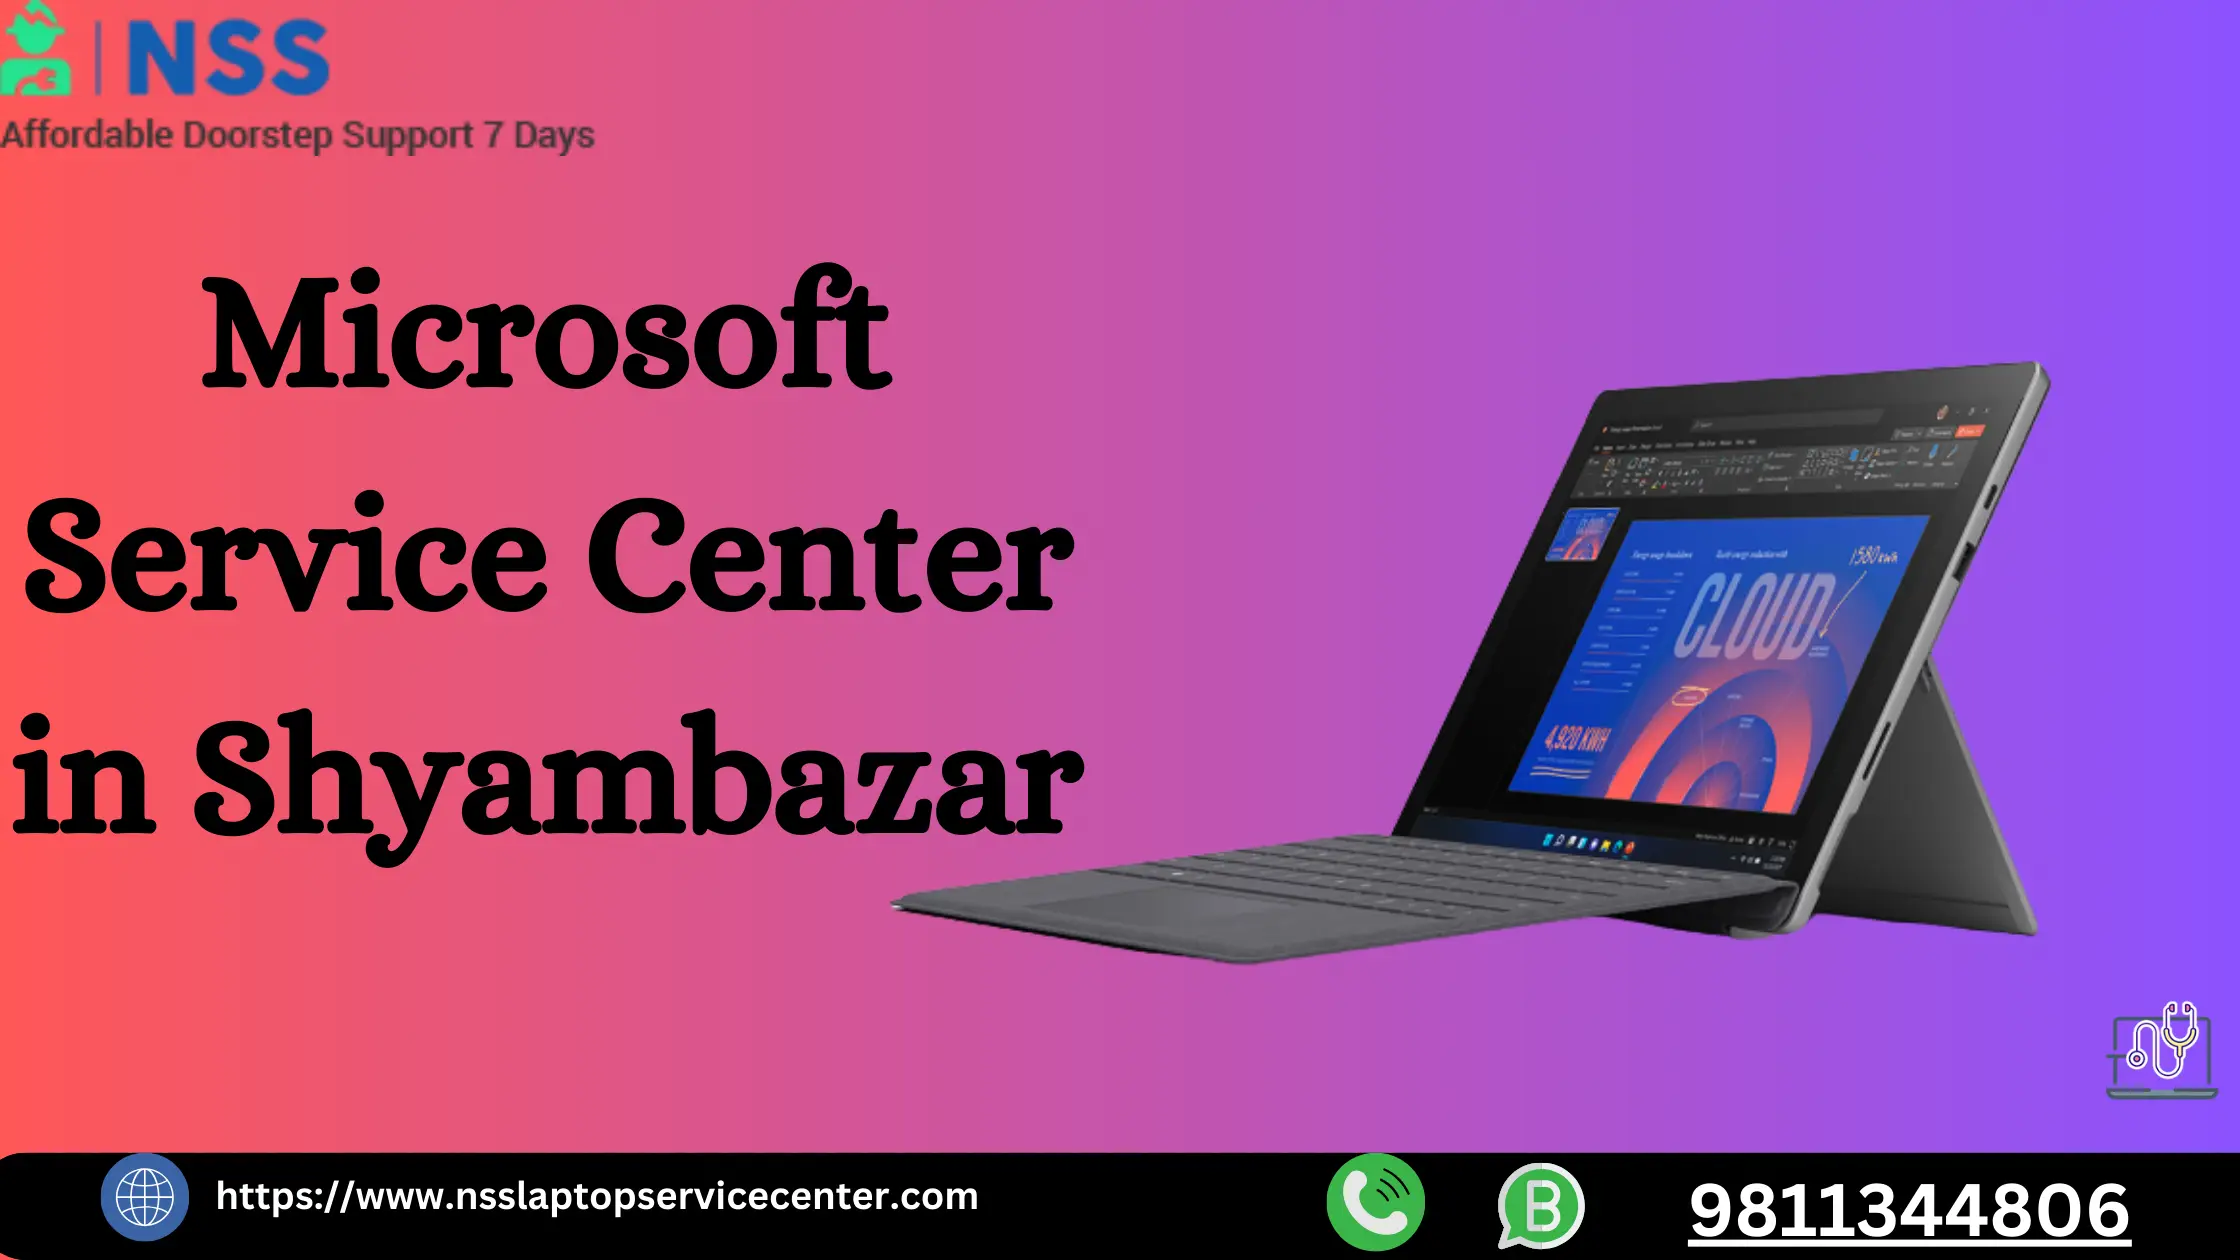 Microsoft Service Center in Shyambazar Near Kolkata